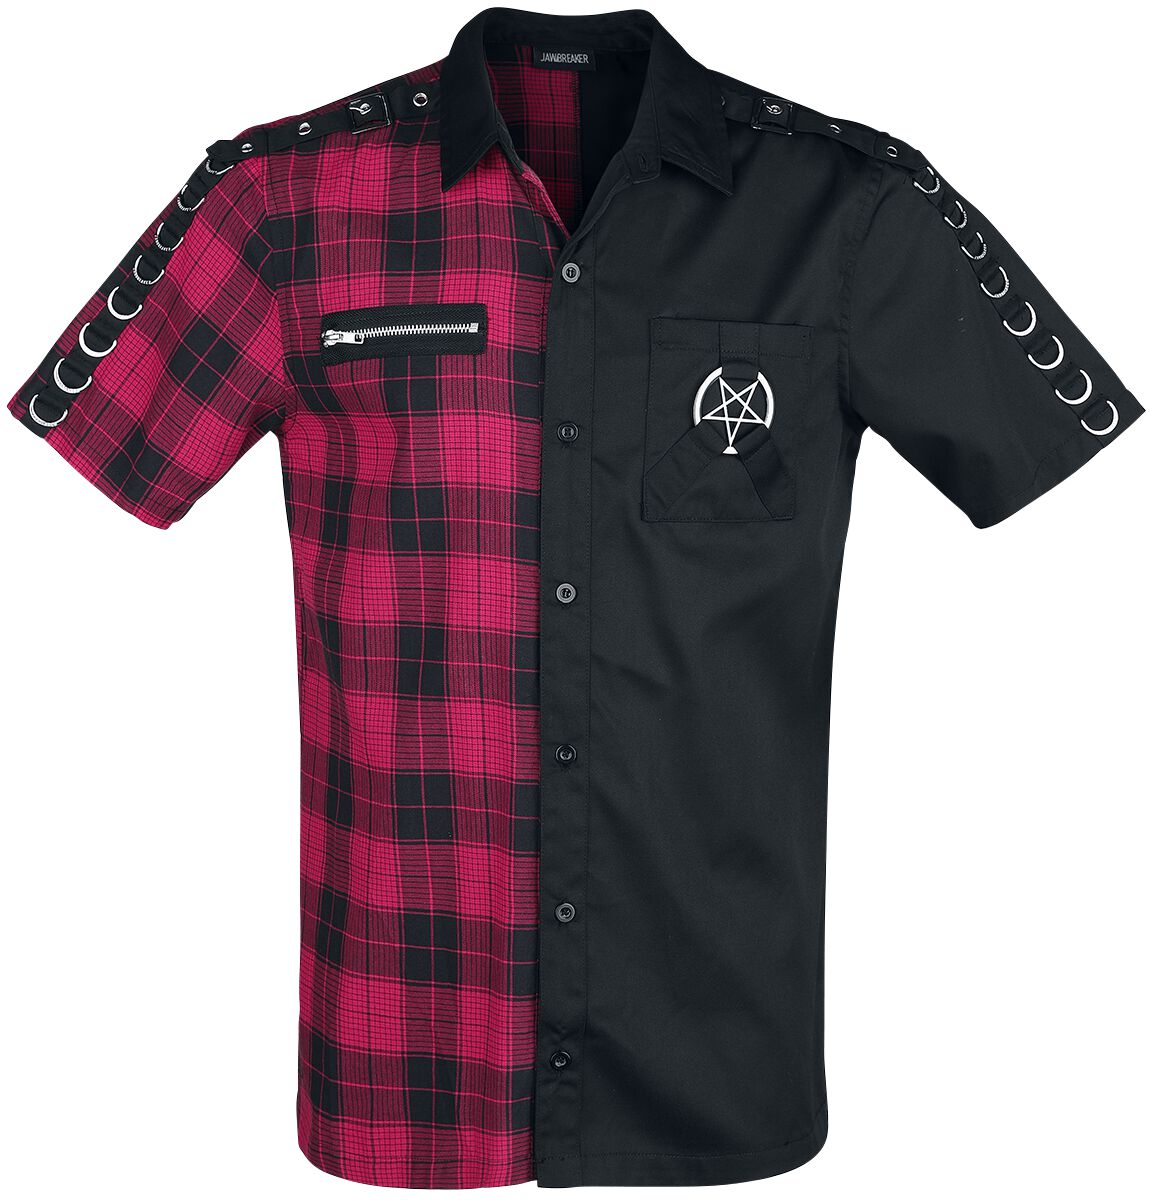 Jawbreaker - Gothic Kurzarmhemd - Split Shirt - S bis XXL - für Männer - Größe M - schwarz/rot